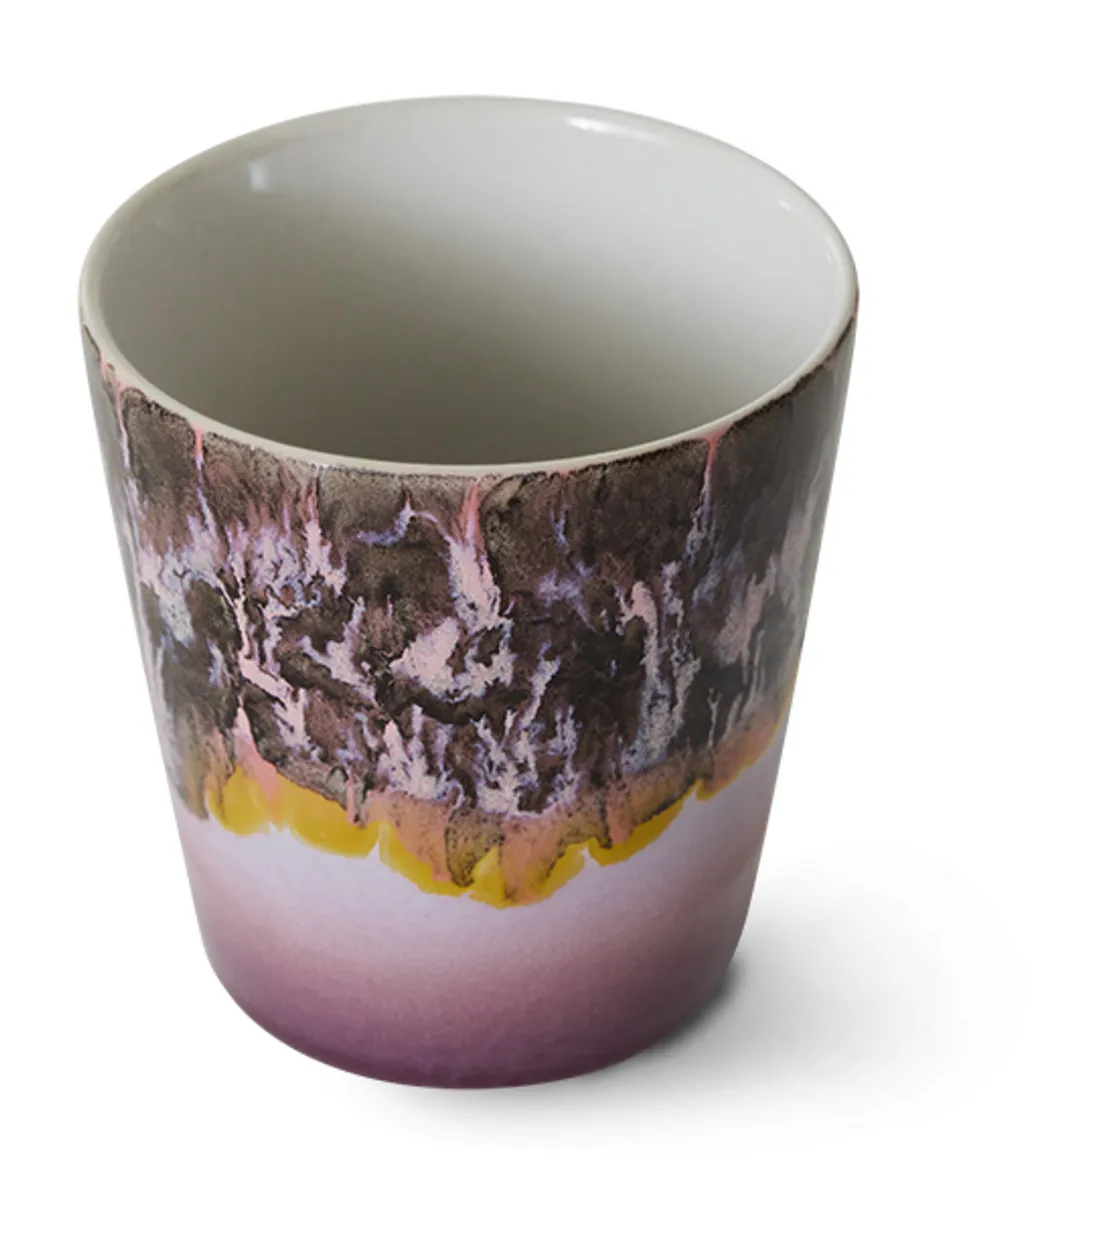 70s ceramics: coffee mug, blast